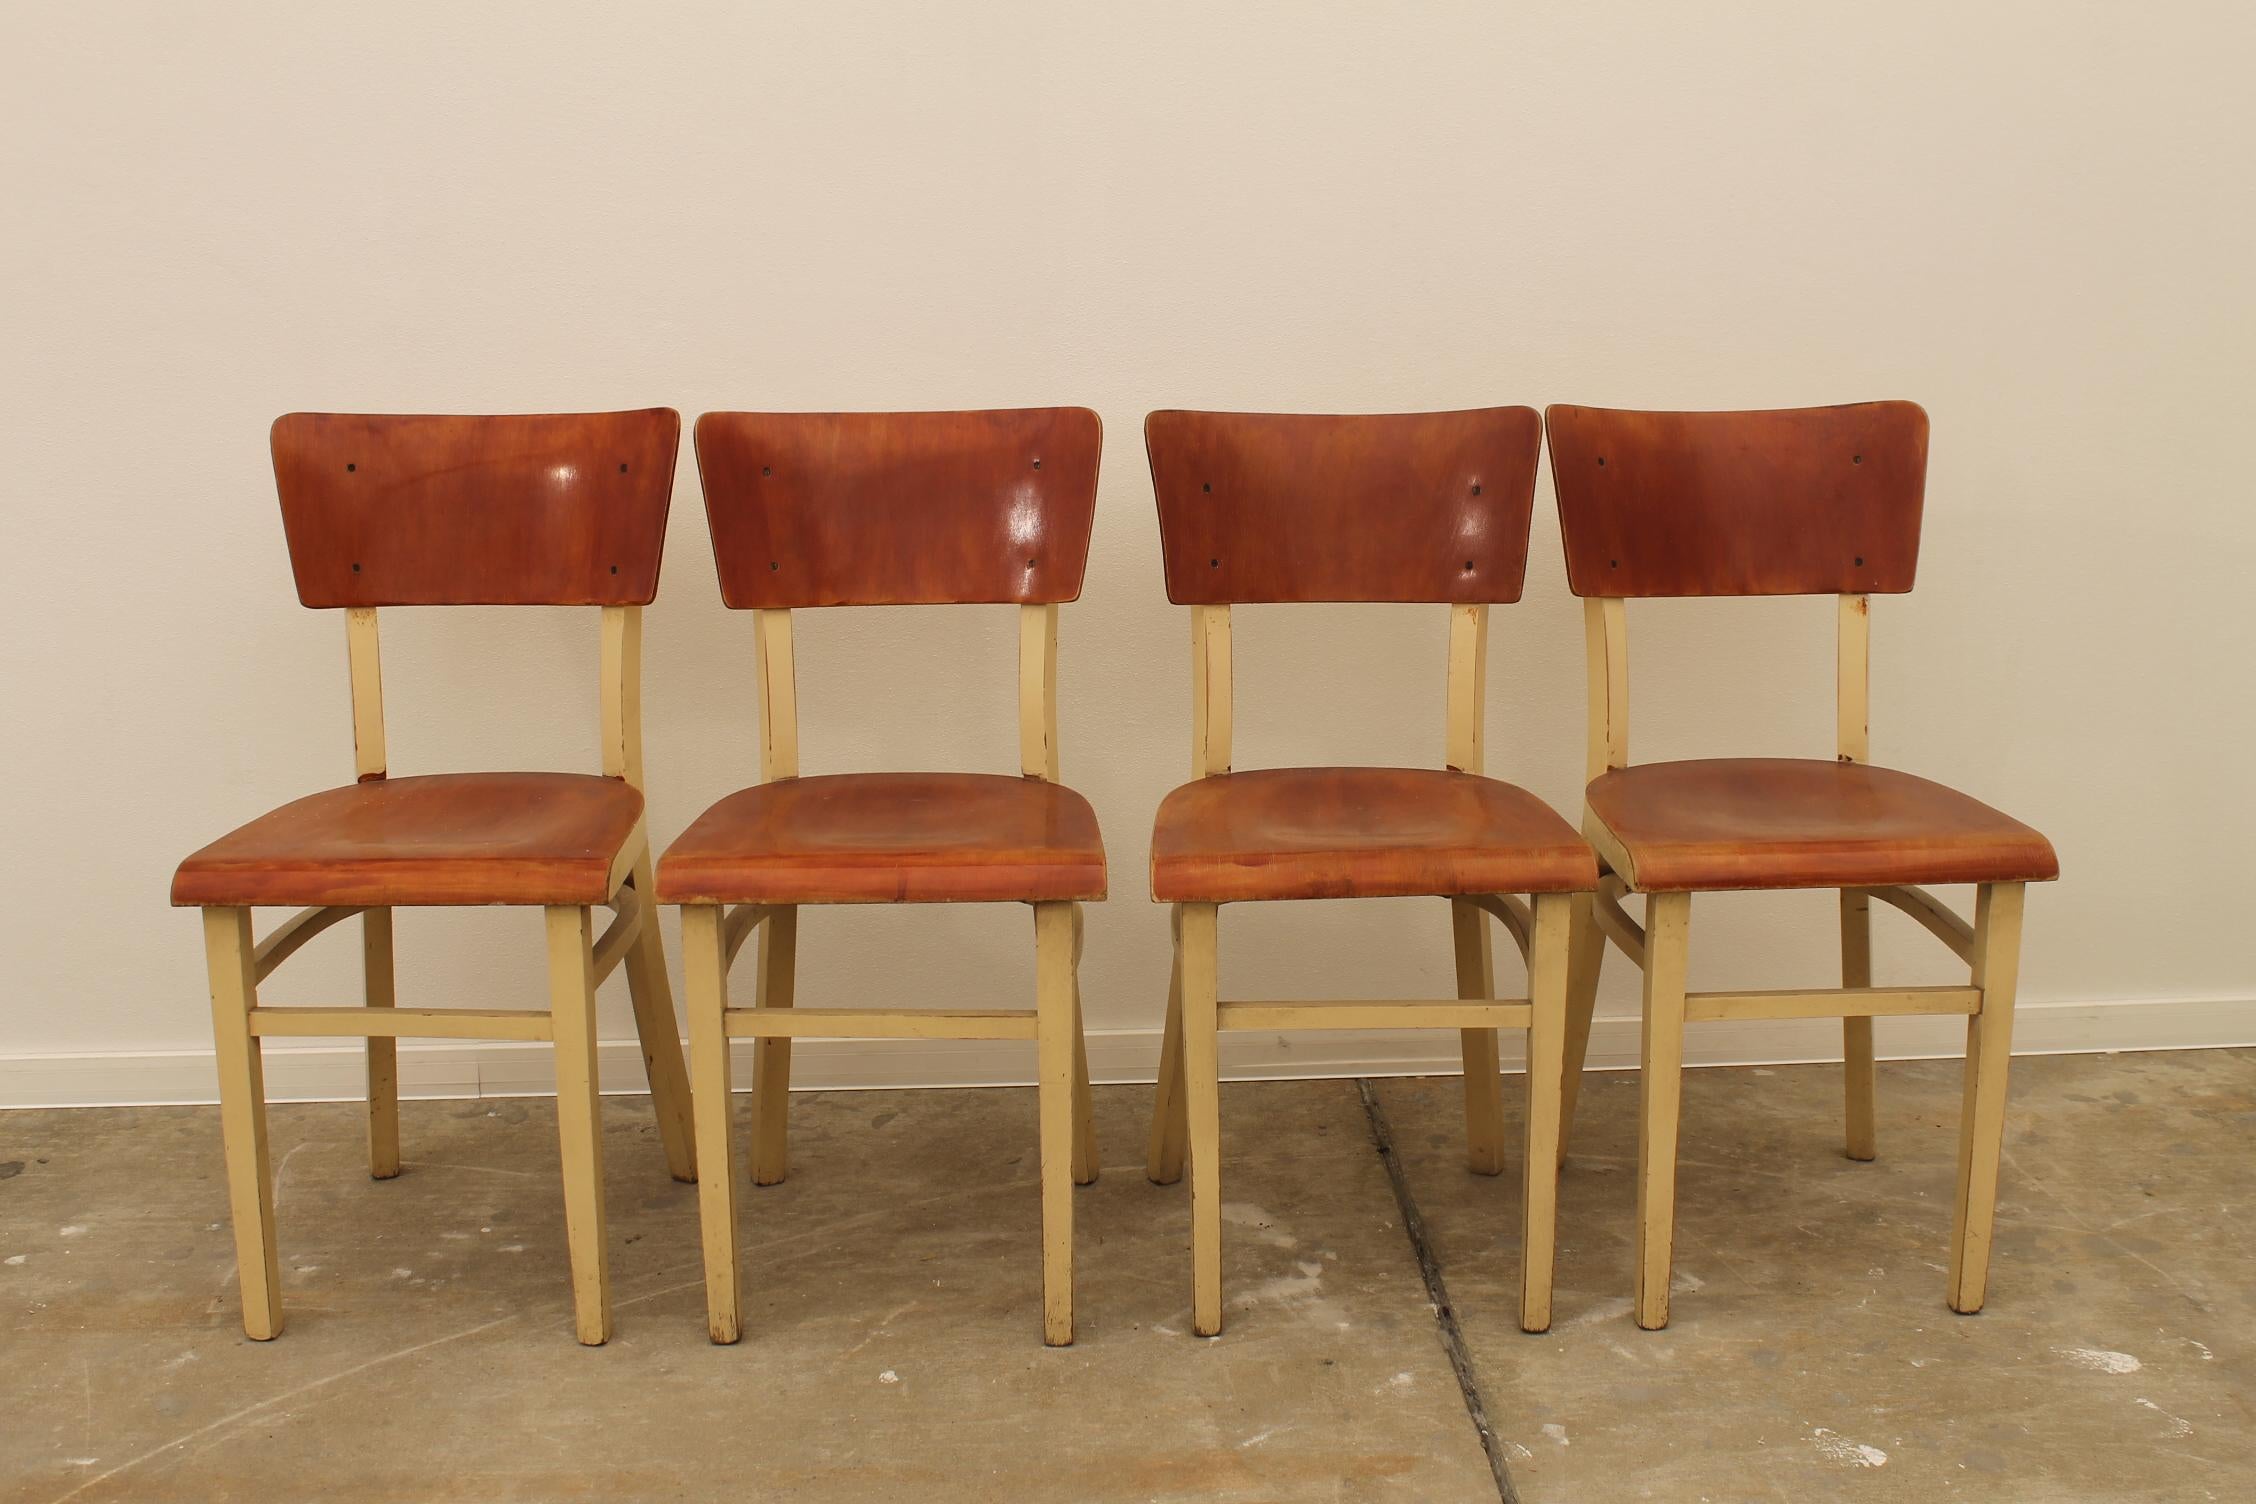 Satz von vier Esszimmerstühlen, wahrscheinlich von TON, hergestellt in der ehemaligen Tschechoslowakei in den 1950er Jahren. Es ist aus Holz und Sperrholz gefertigt. In gutem Vintage-Zustand. Der Preis gilt für das Viererset.

Maße: Höhe: 82